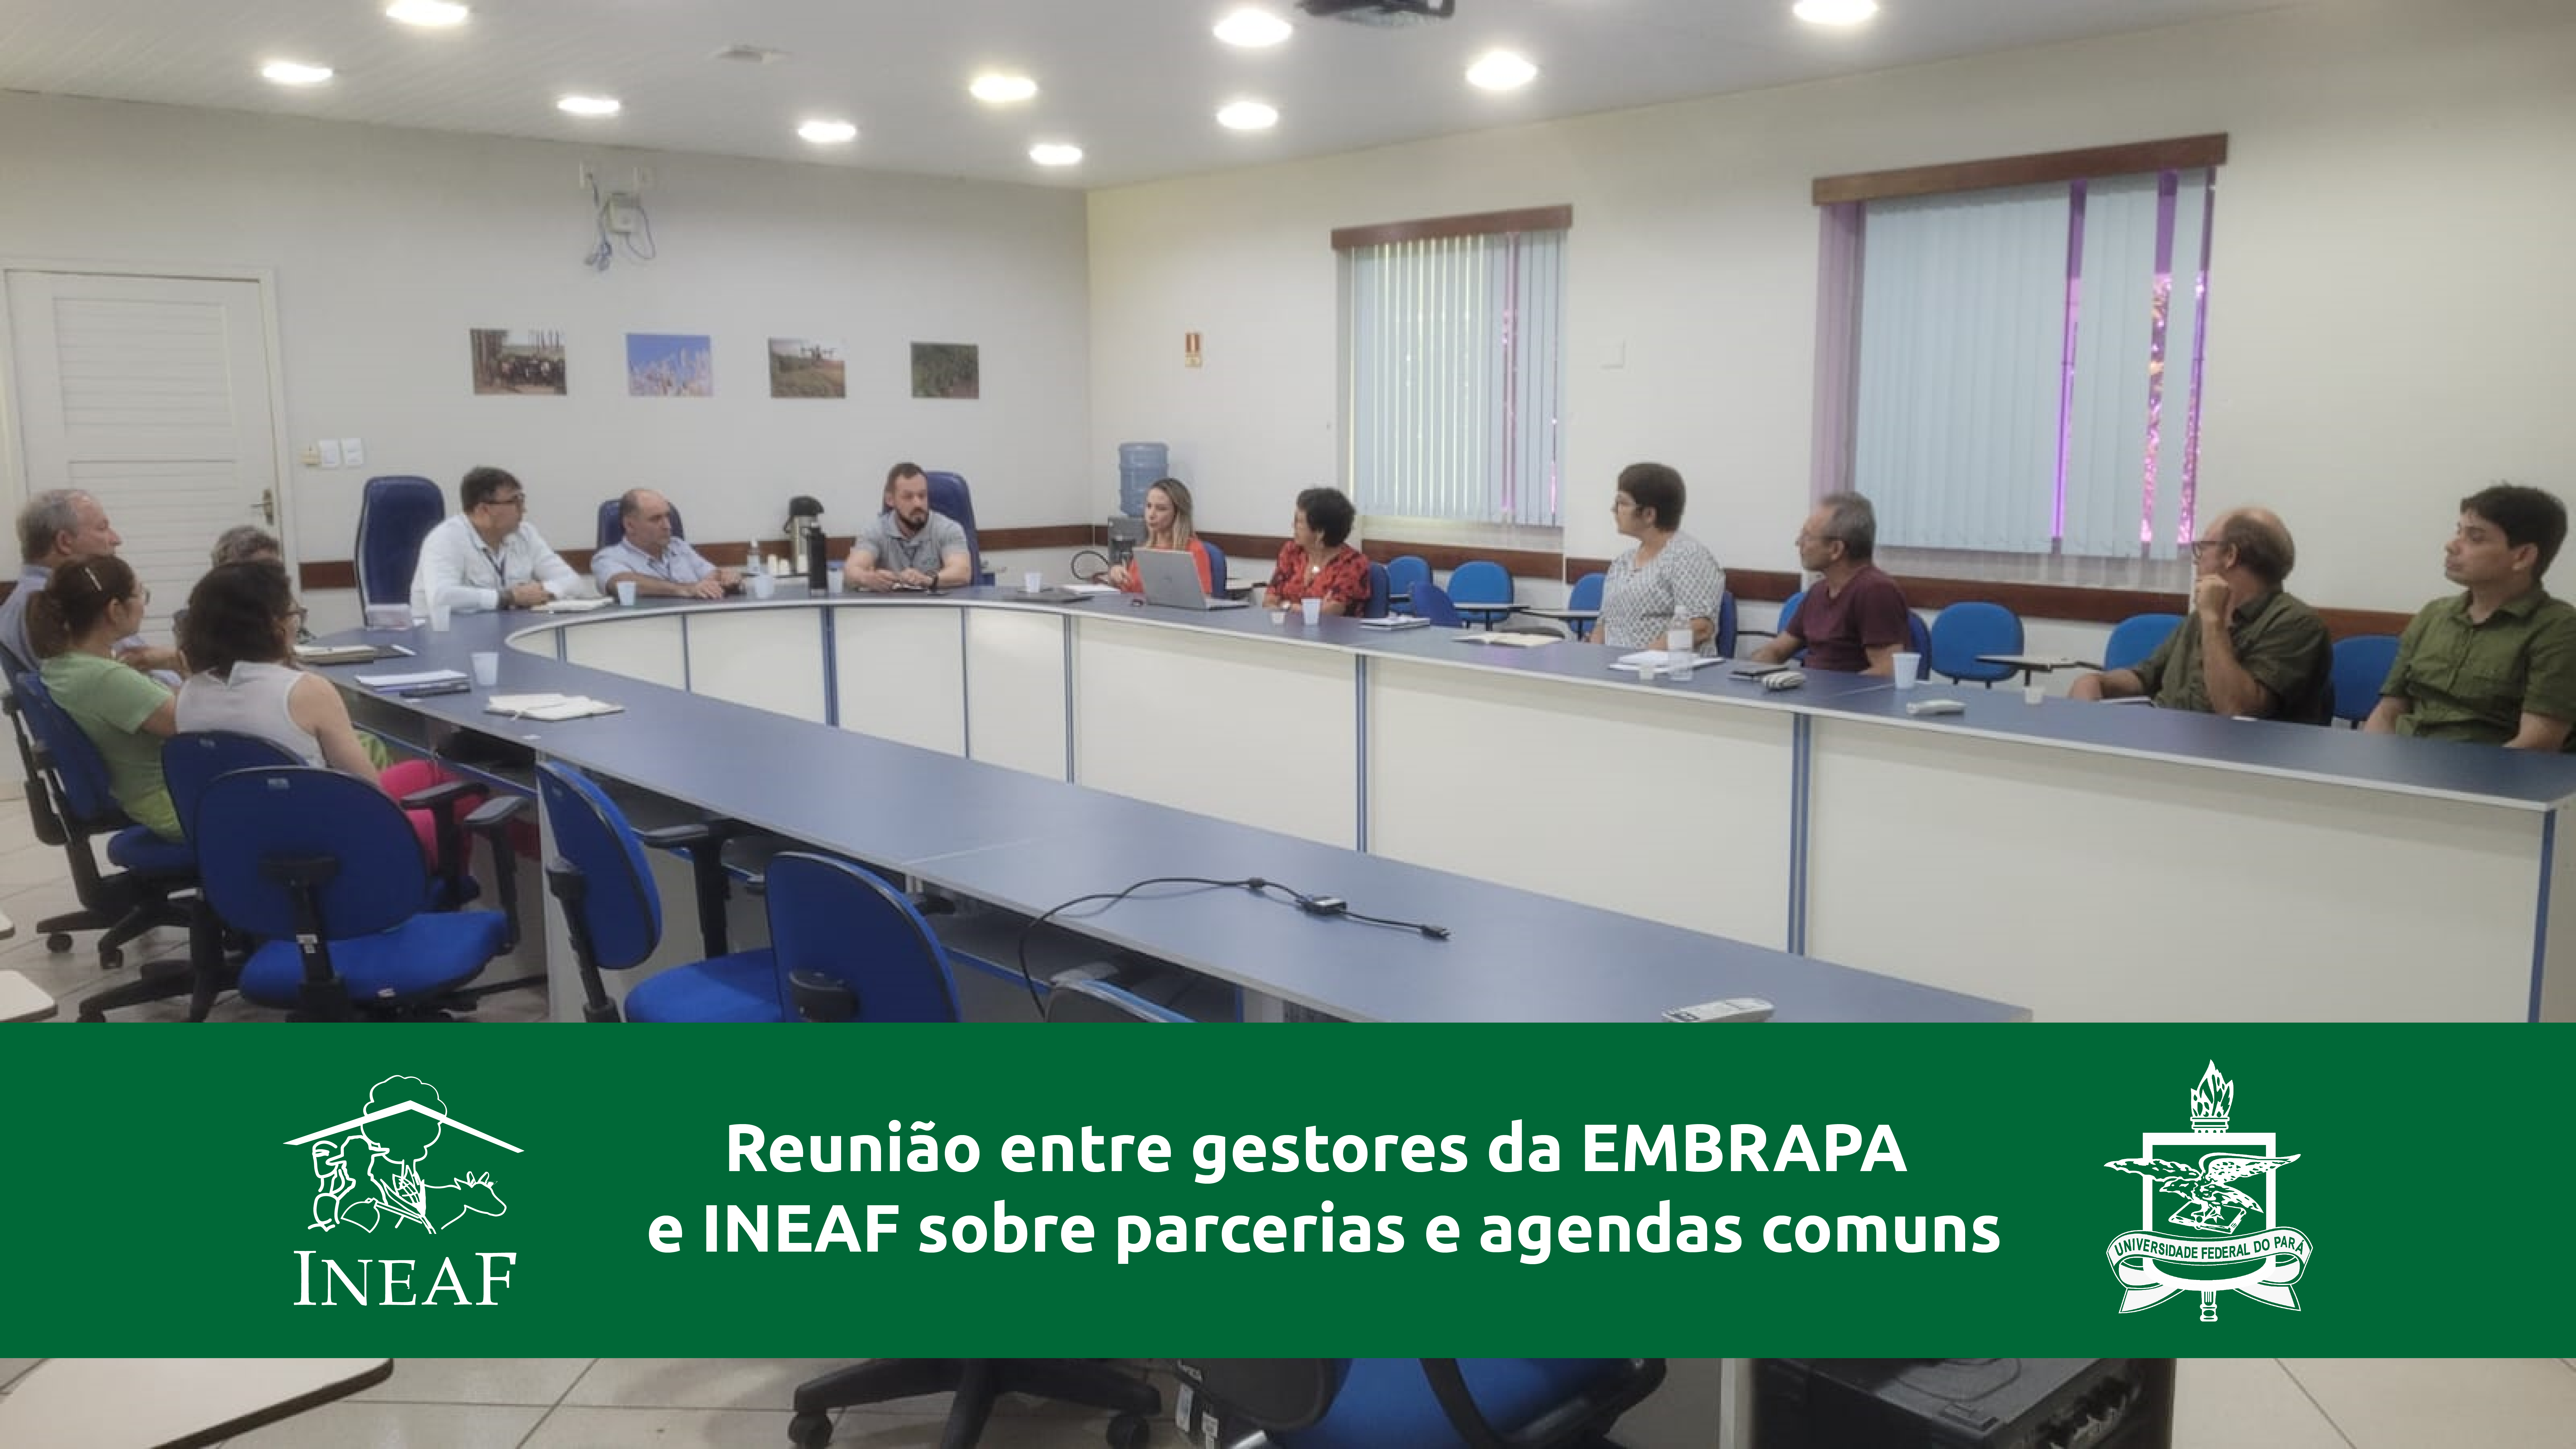 Reunião entre gestores da EMBRAPA e INEAF sobre parcerias e agendas comuns